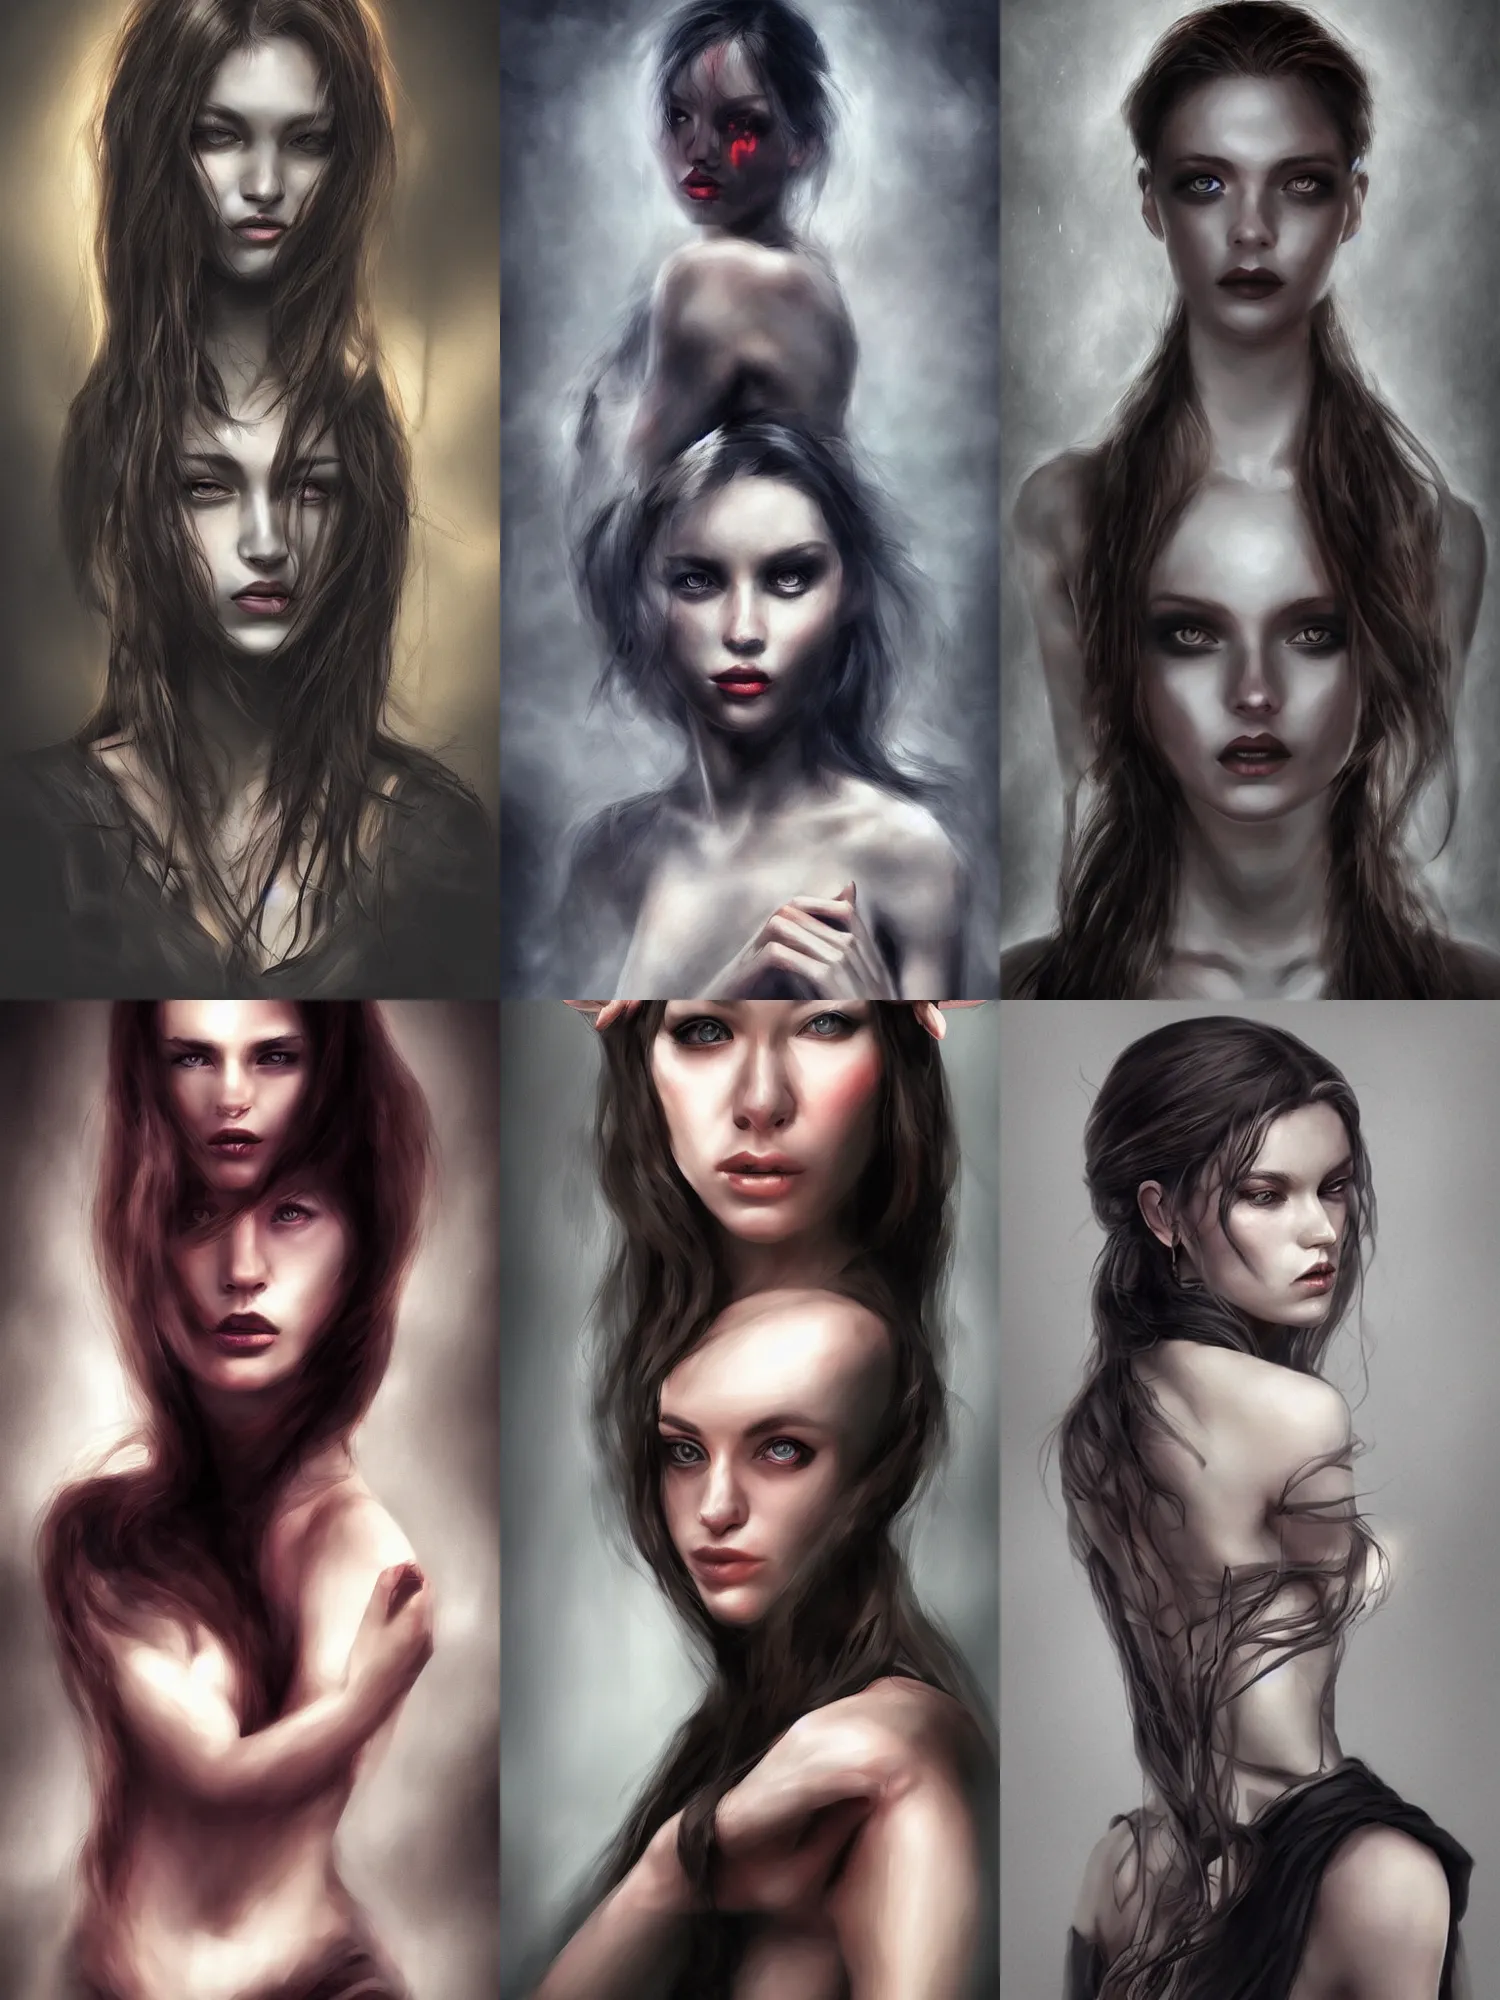 Prompt: beautiful half body portrait art, queen of darkness, realistic digital art, dark lighting,